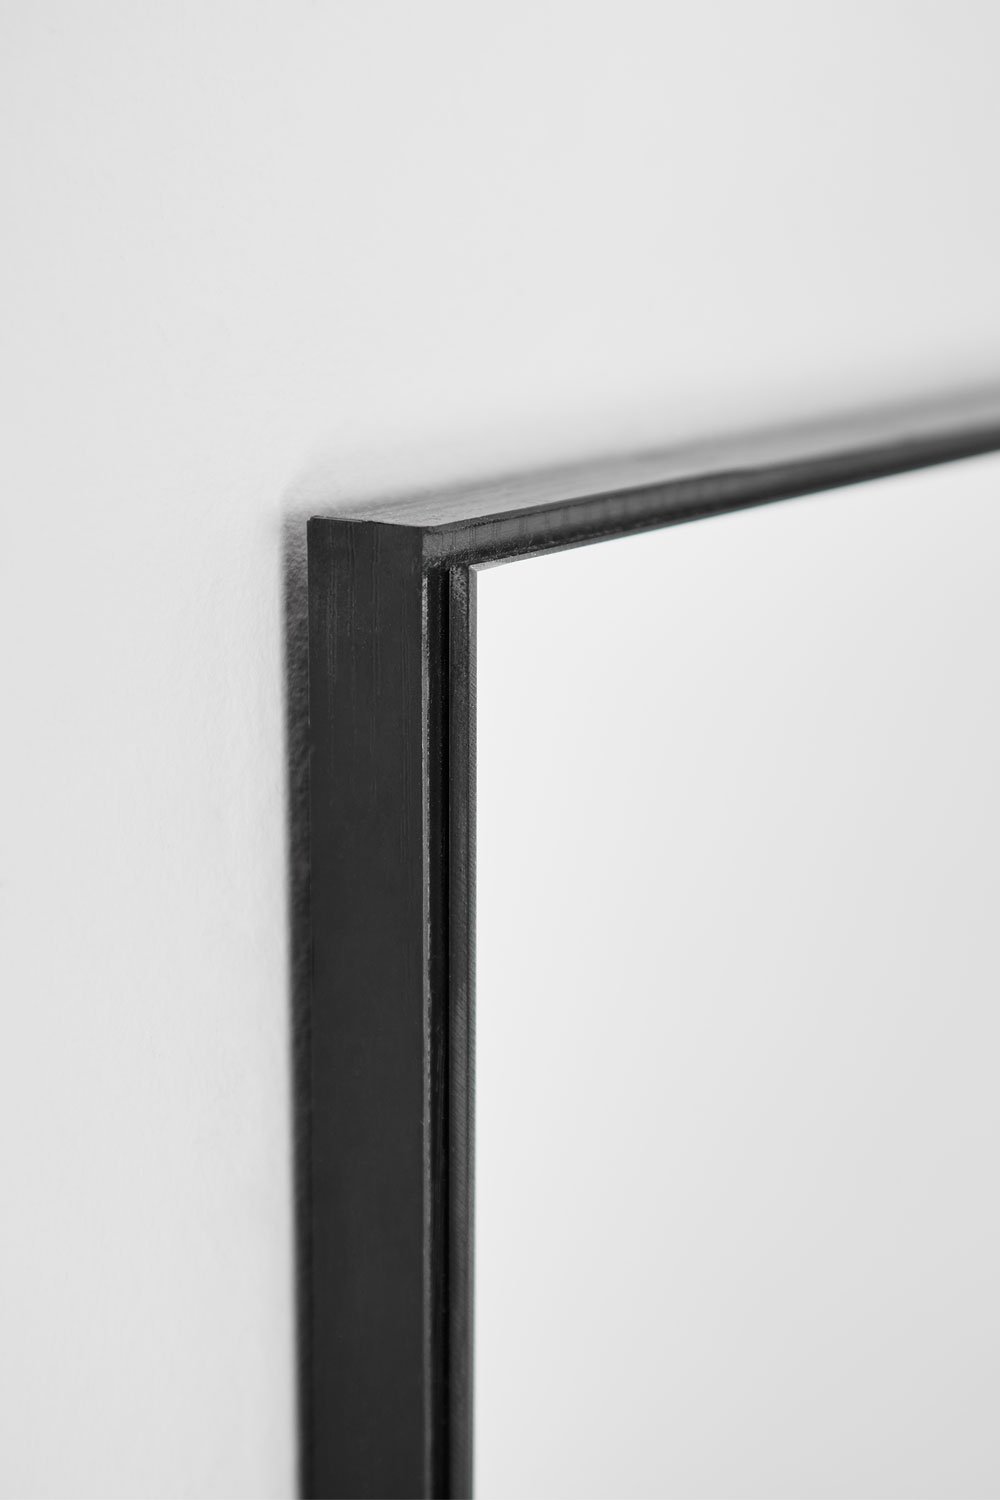 Prostokątne lustro ścienne z MDF (60x140 cm) Vuaret, obrazek w galerii 2